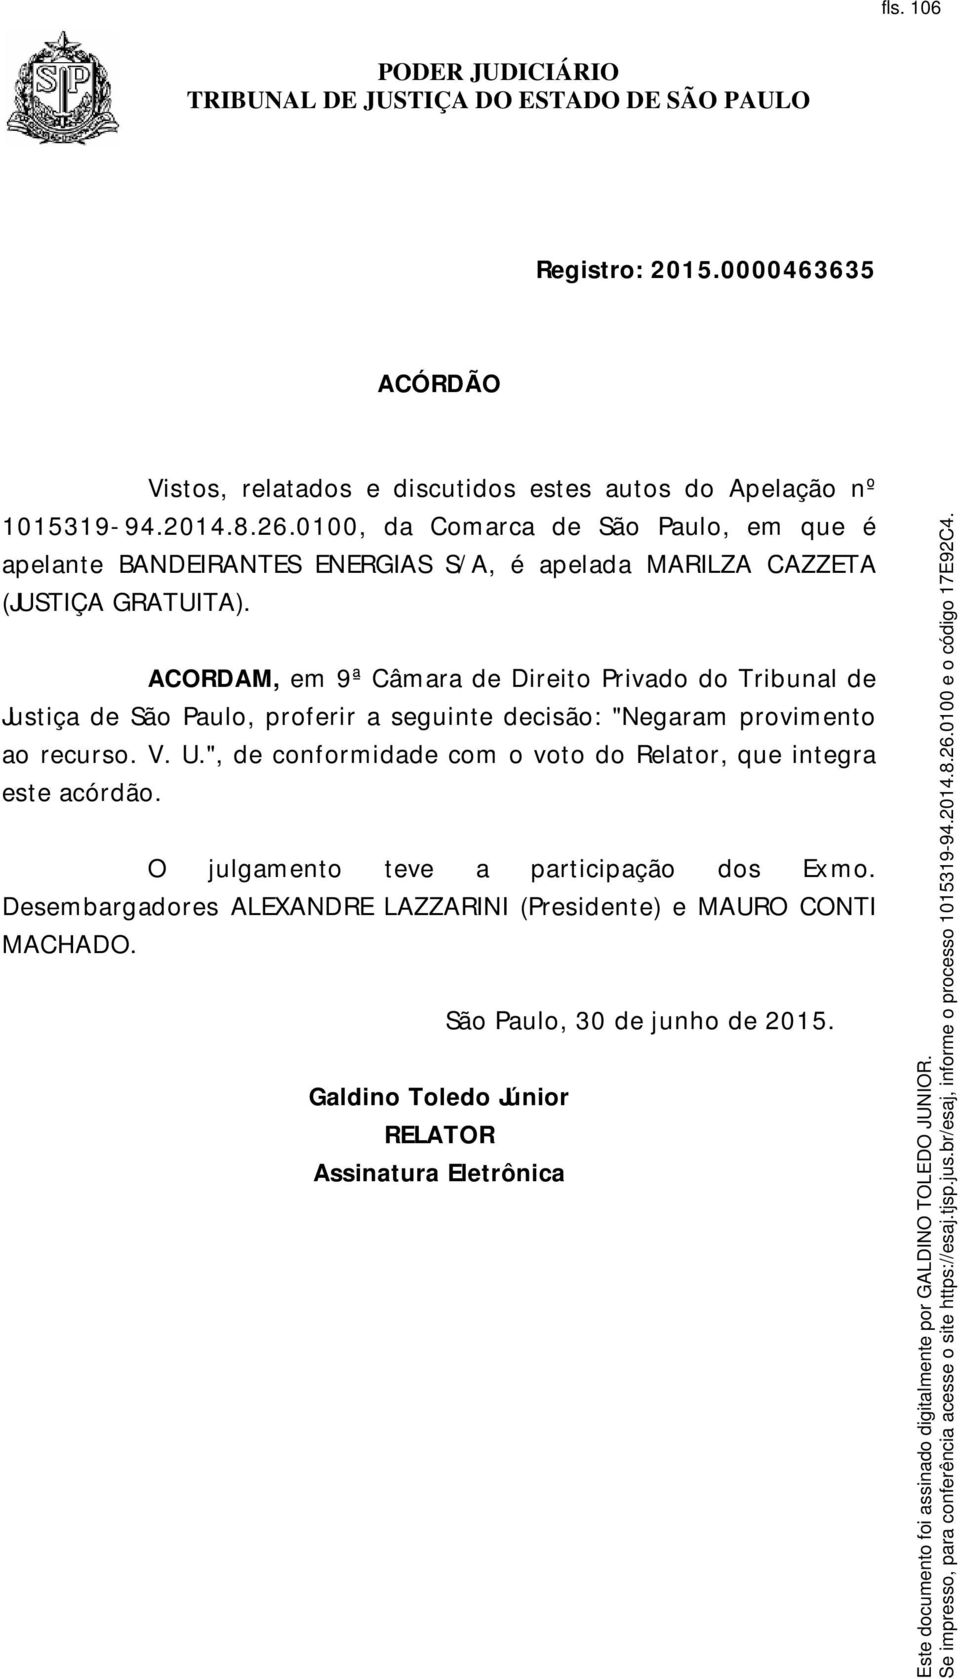 ACORDAM, em do Tribunal de Justiça de São Paulo, proferir a seguinte decisão: "Negaram provimento ao recurso. V. U.